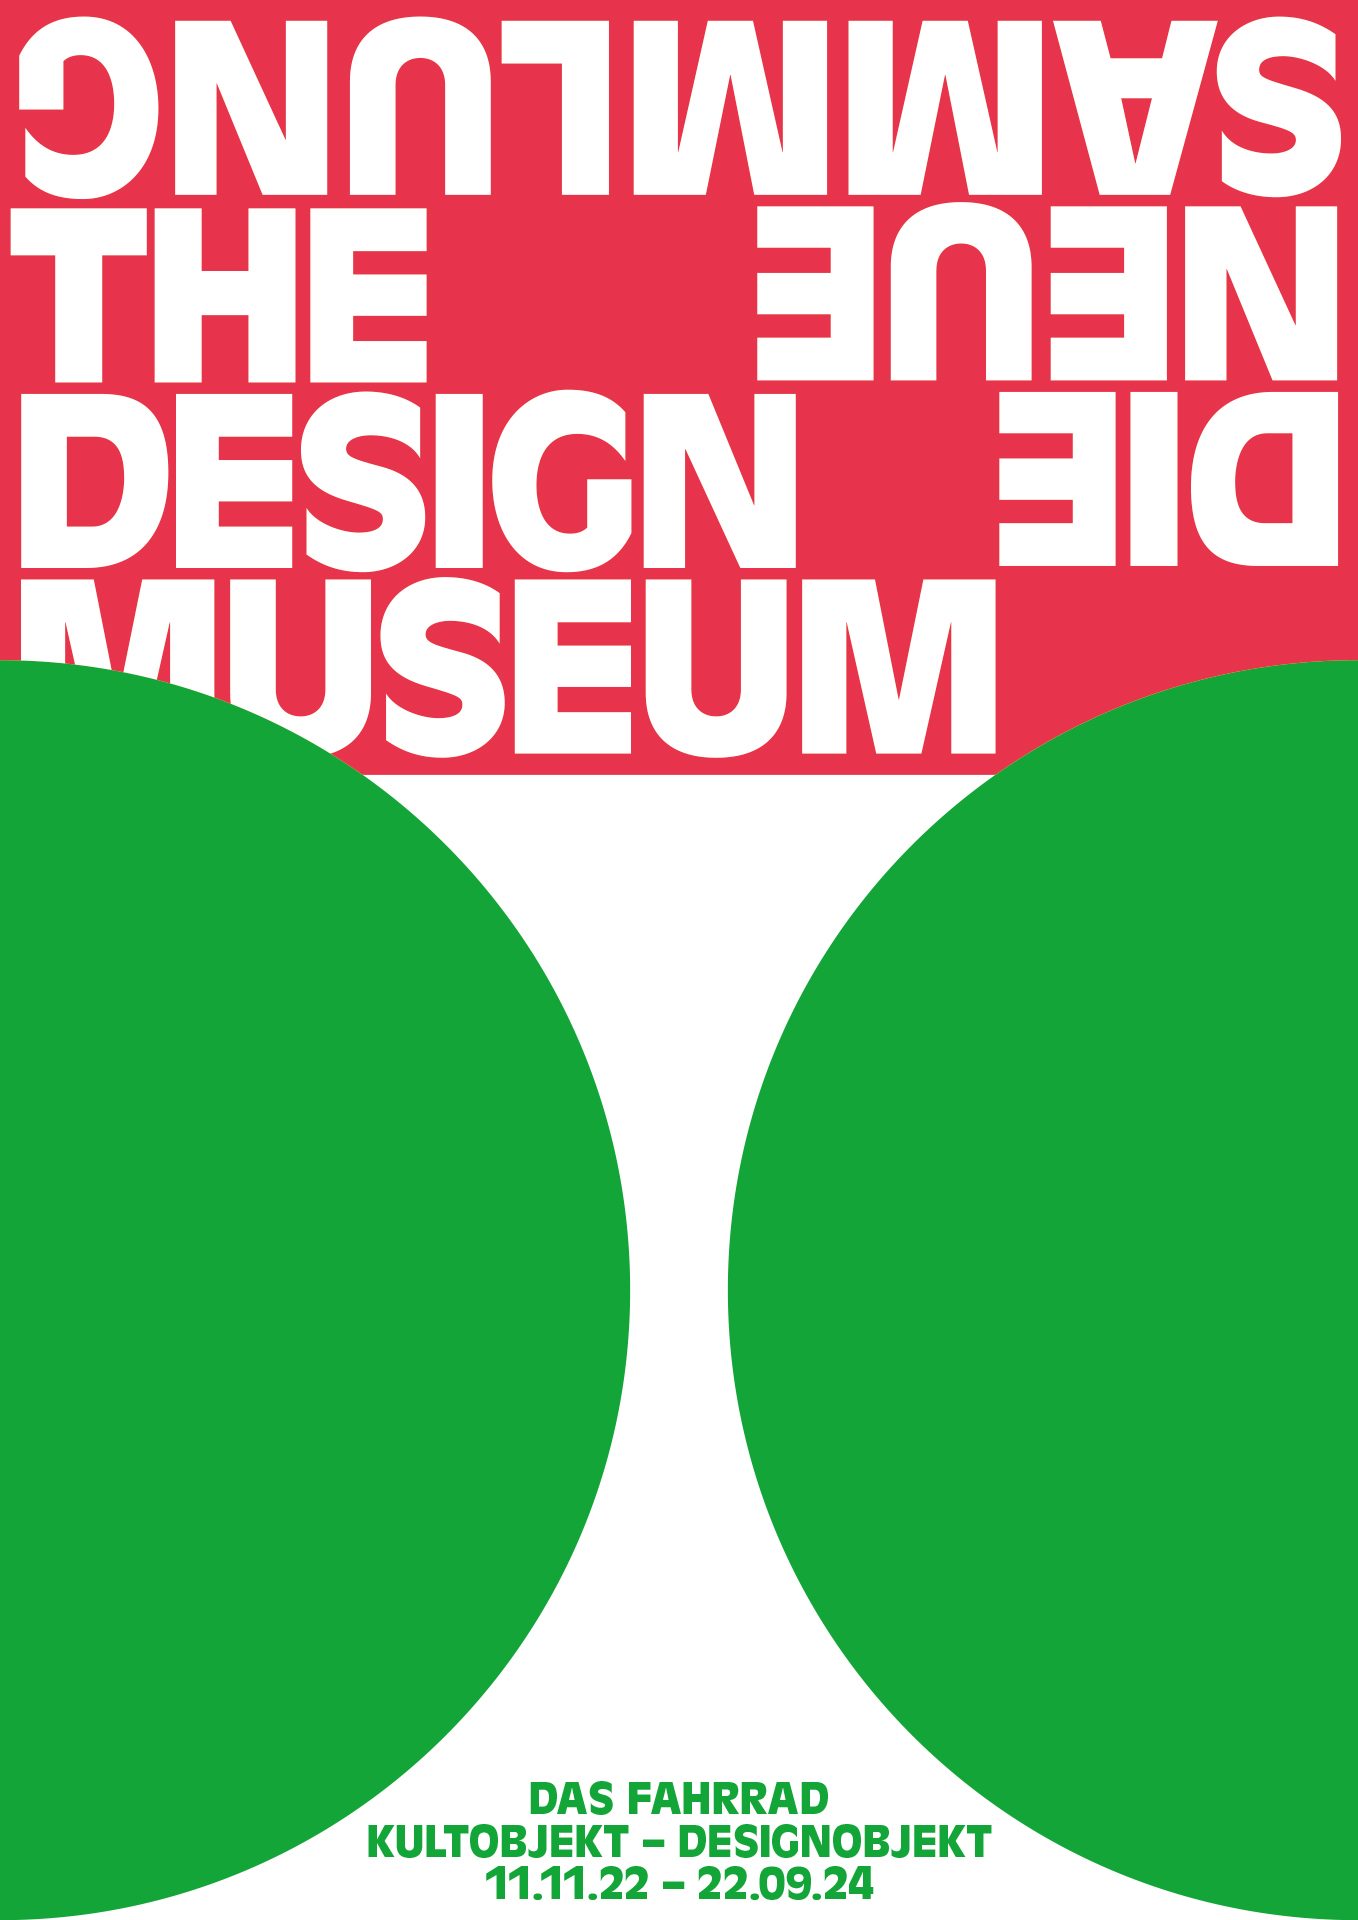 Ausstellungsplakat. Das rote Logo von Die Neue Sammlung am oberen Rand. Darunter zwei grüne Halbkreise in grüner Farbe. In der Mitte unten steht der Titel der Ausstellung und die Ausstellungslaufzeit.